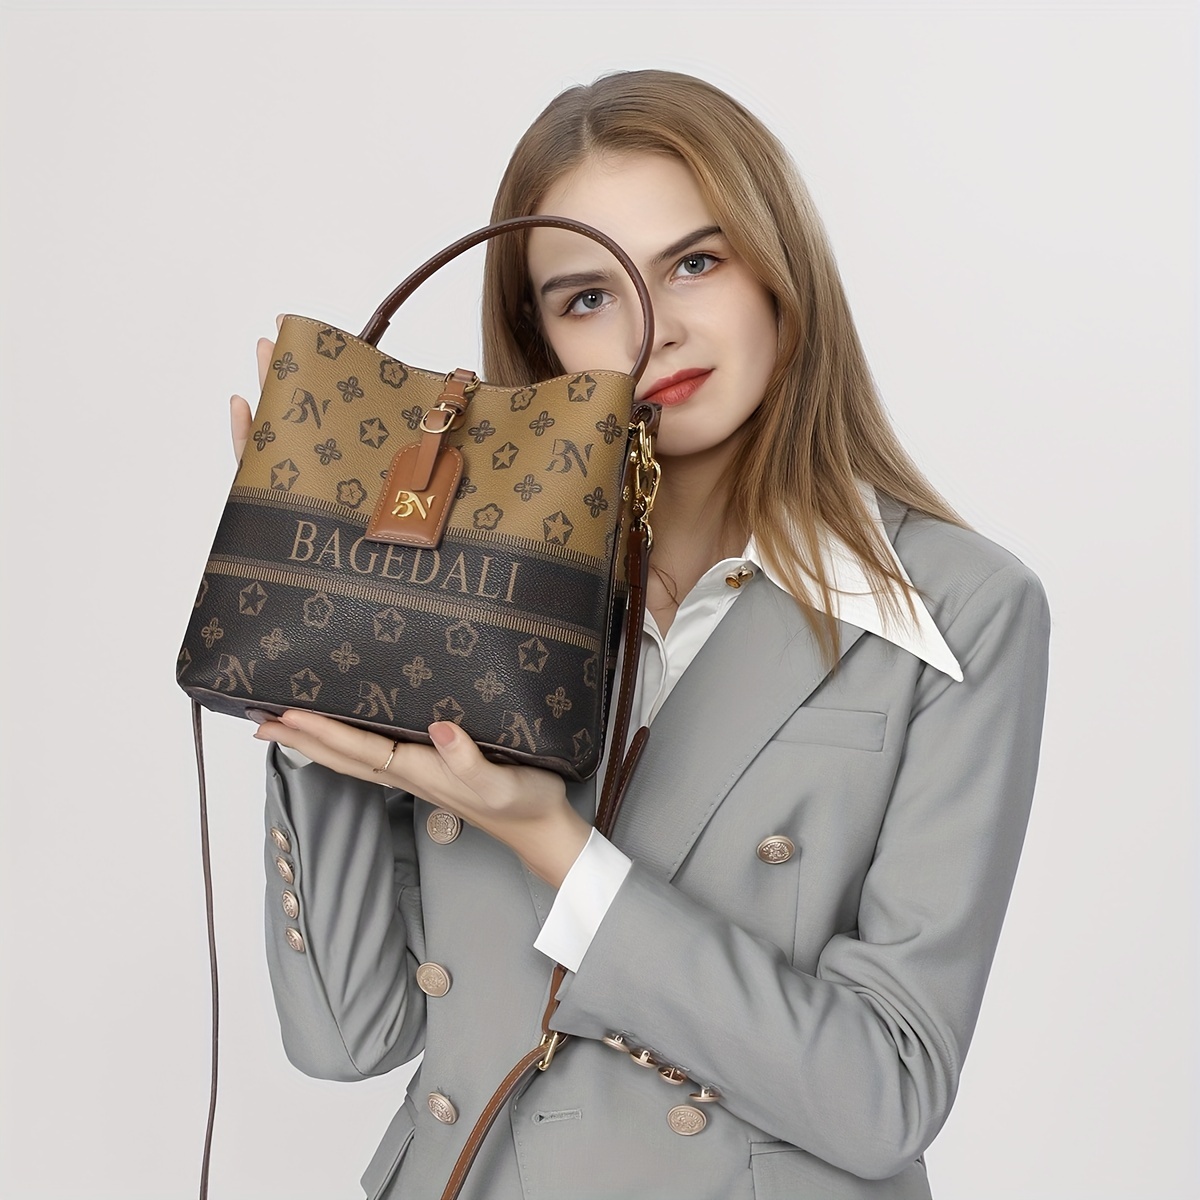 BAGEDALI Ladies Printed Tote Handbag High-Capacity Leather Elegant Vintage Women Commuter One